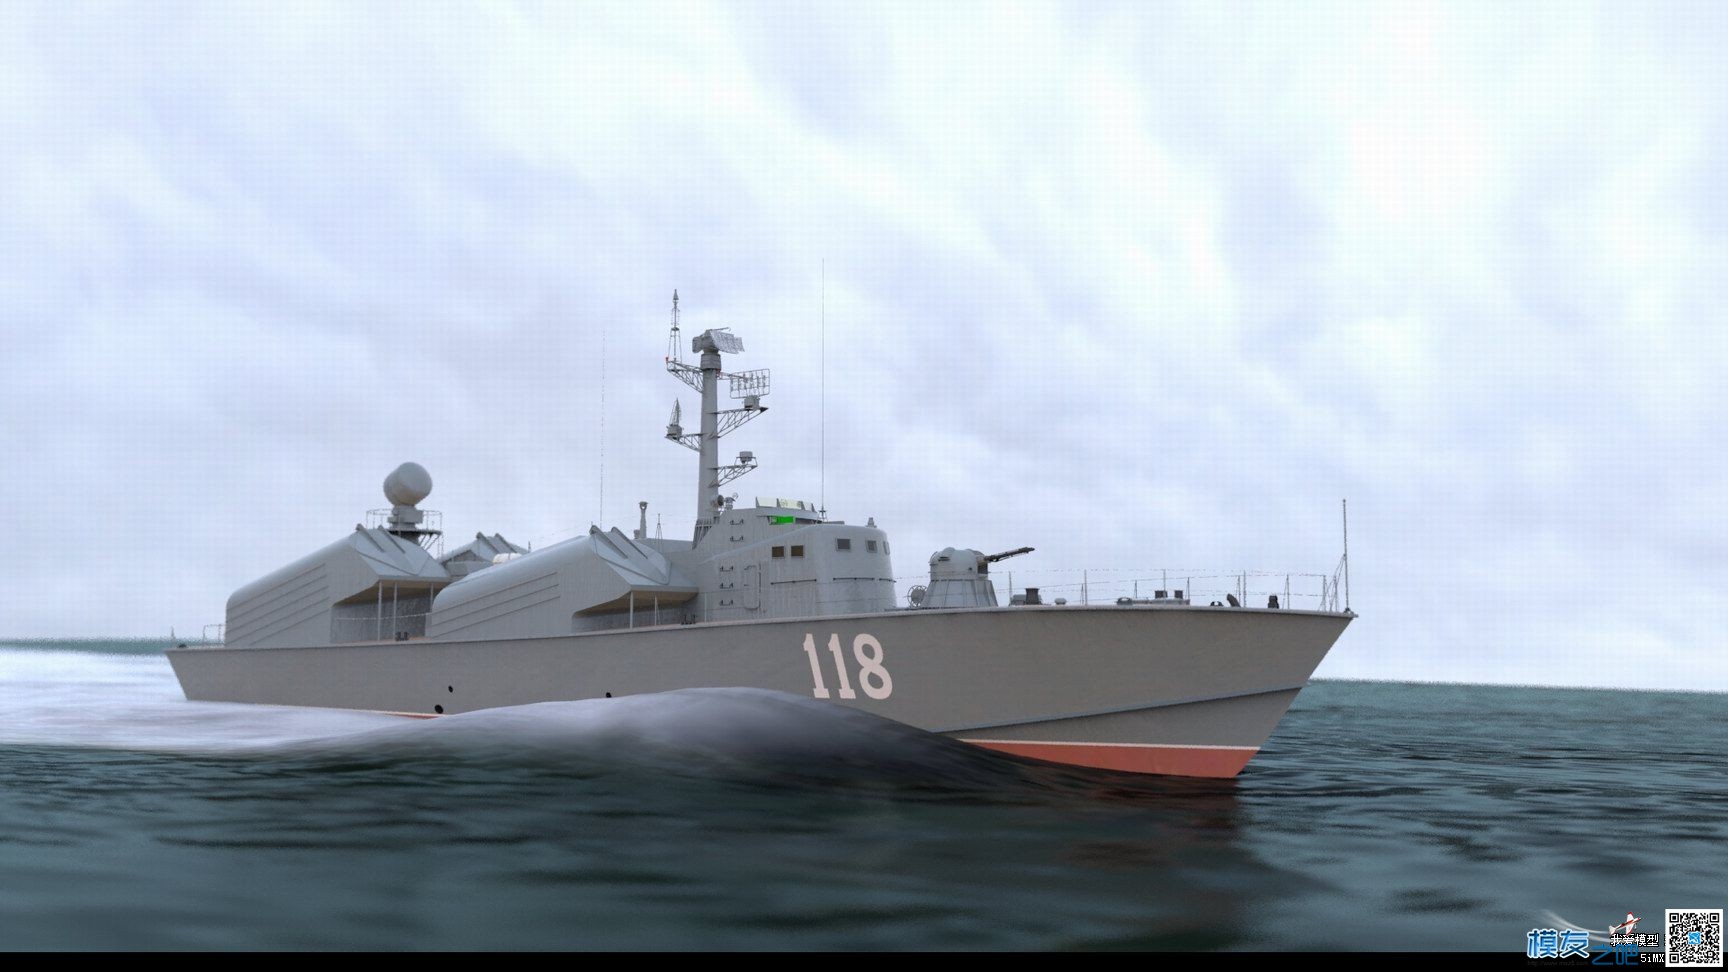 【偶尔飞一次】制作【俄罗斯黄蜂3型导弹艇】模型 图纸 作者:漂洋过海 9863 